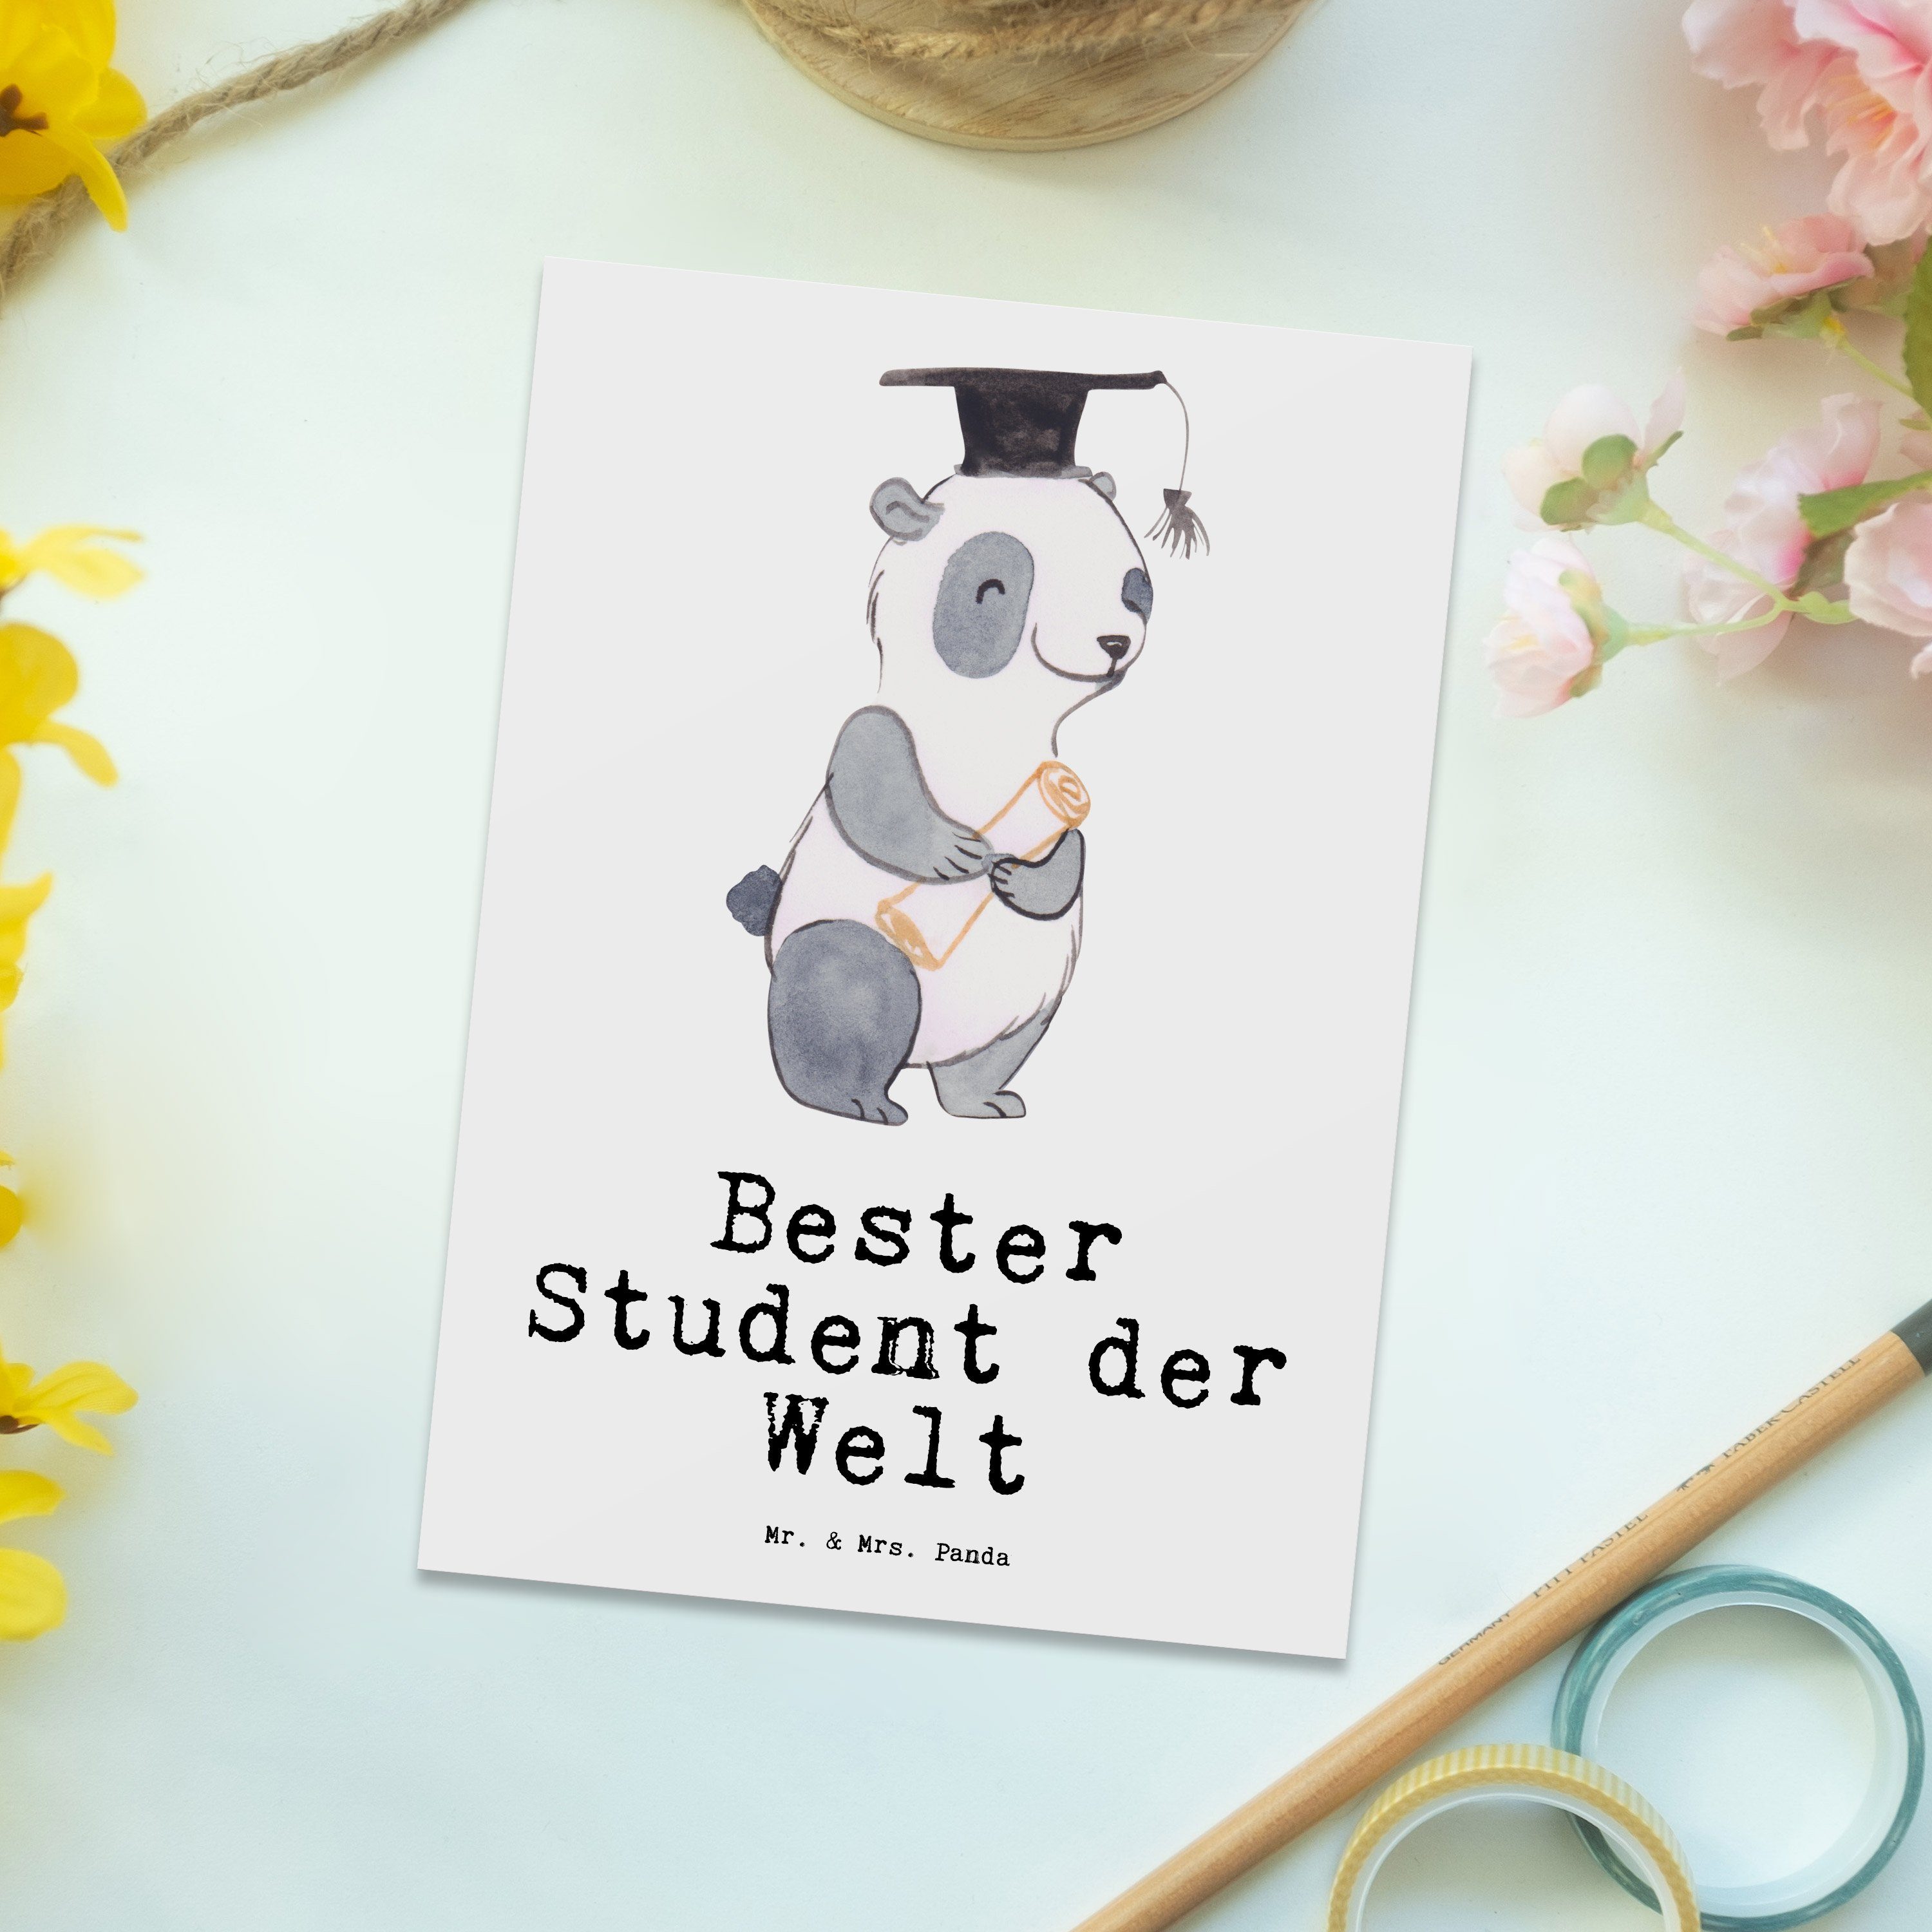 Mr. & Mrs. Panda witzig, Einladung, Bester Student Hochschule, Welt - Panda Postkarte der Weiß Schenken, Karte Danke, Geschenkkarte, Geschenktipp, Grußkarte, Geschenk, - für